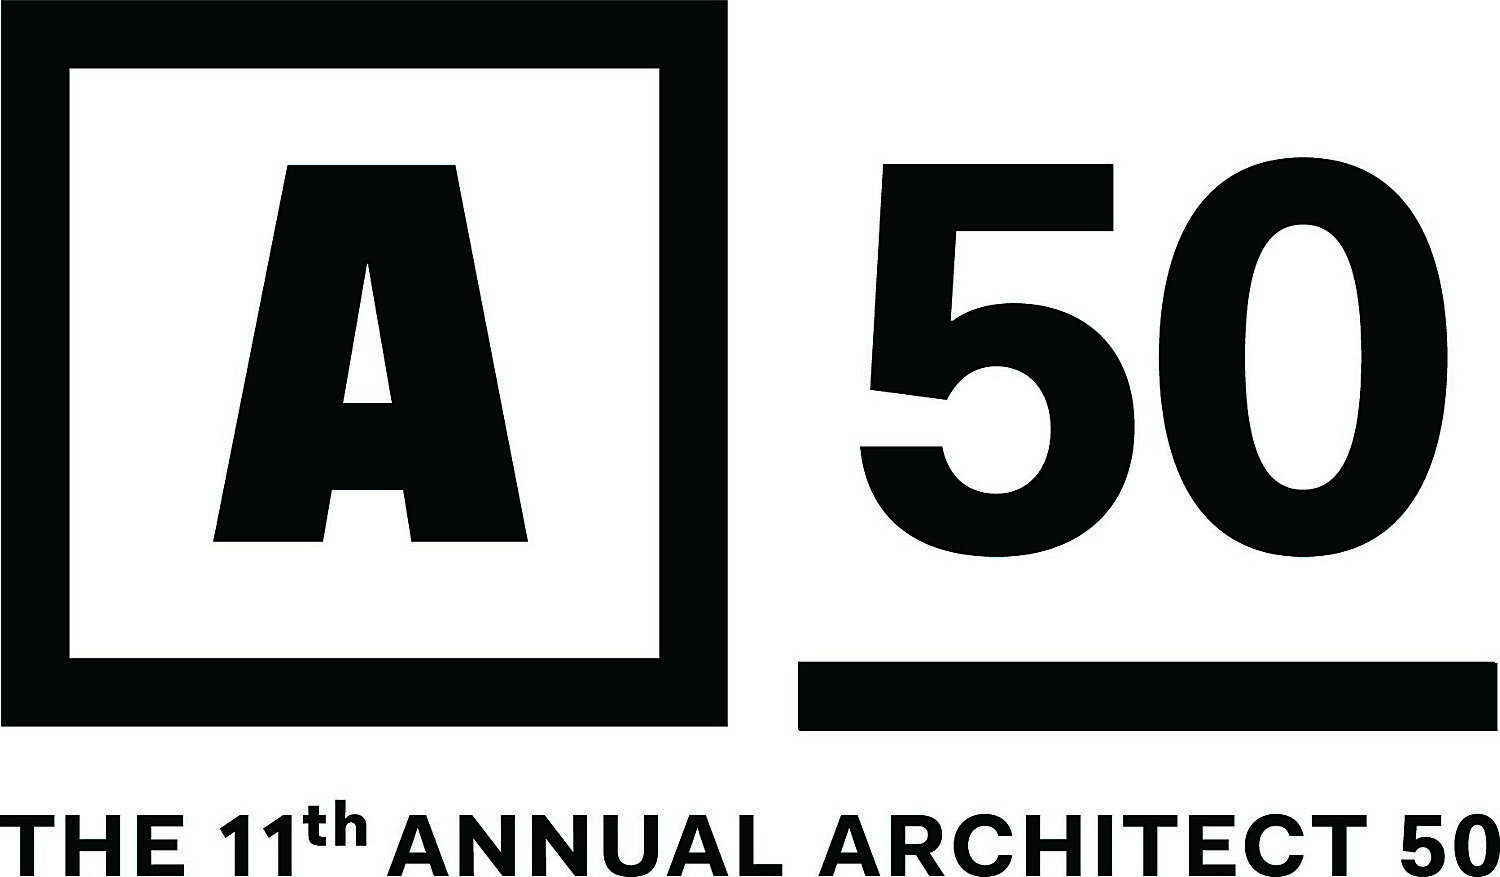 万博体育登录手机版《建筑师》杂志评选的可持续发展50强公司中的零能耗设计